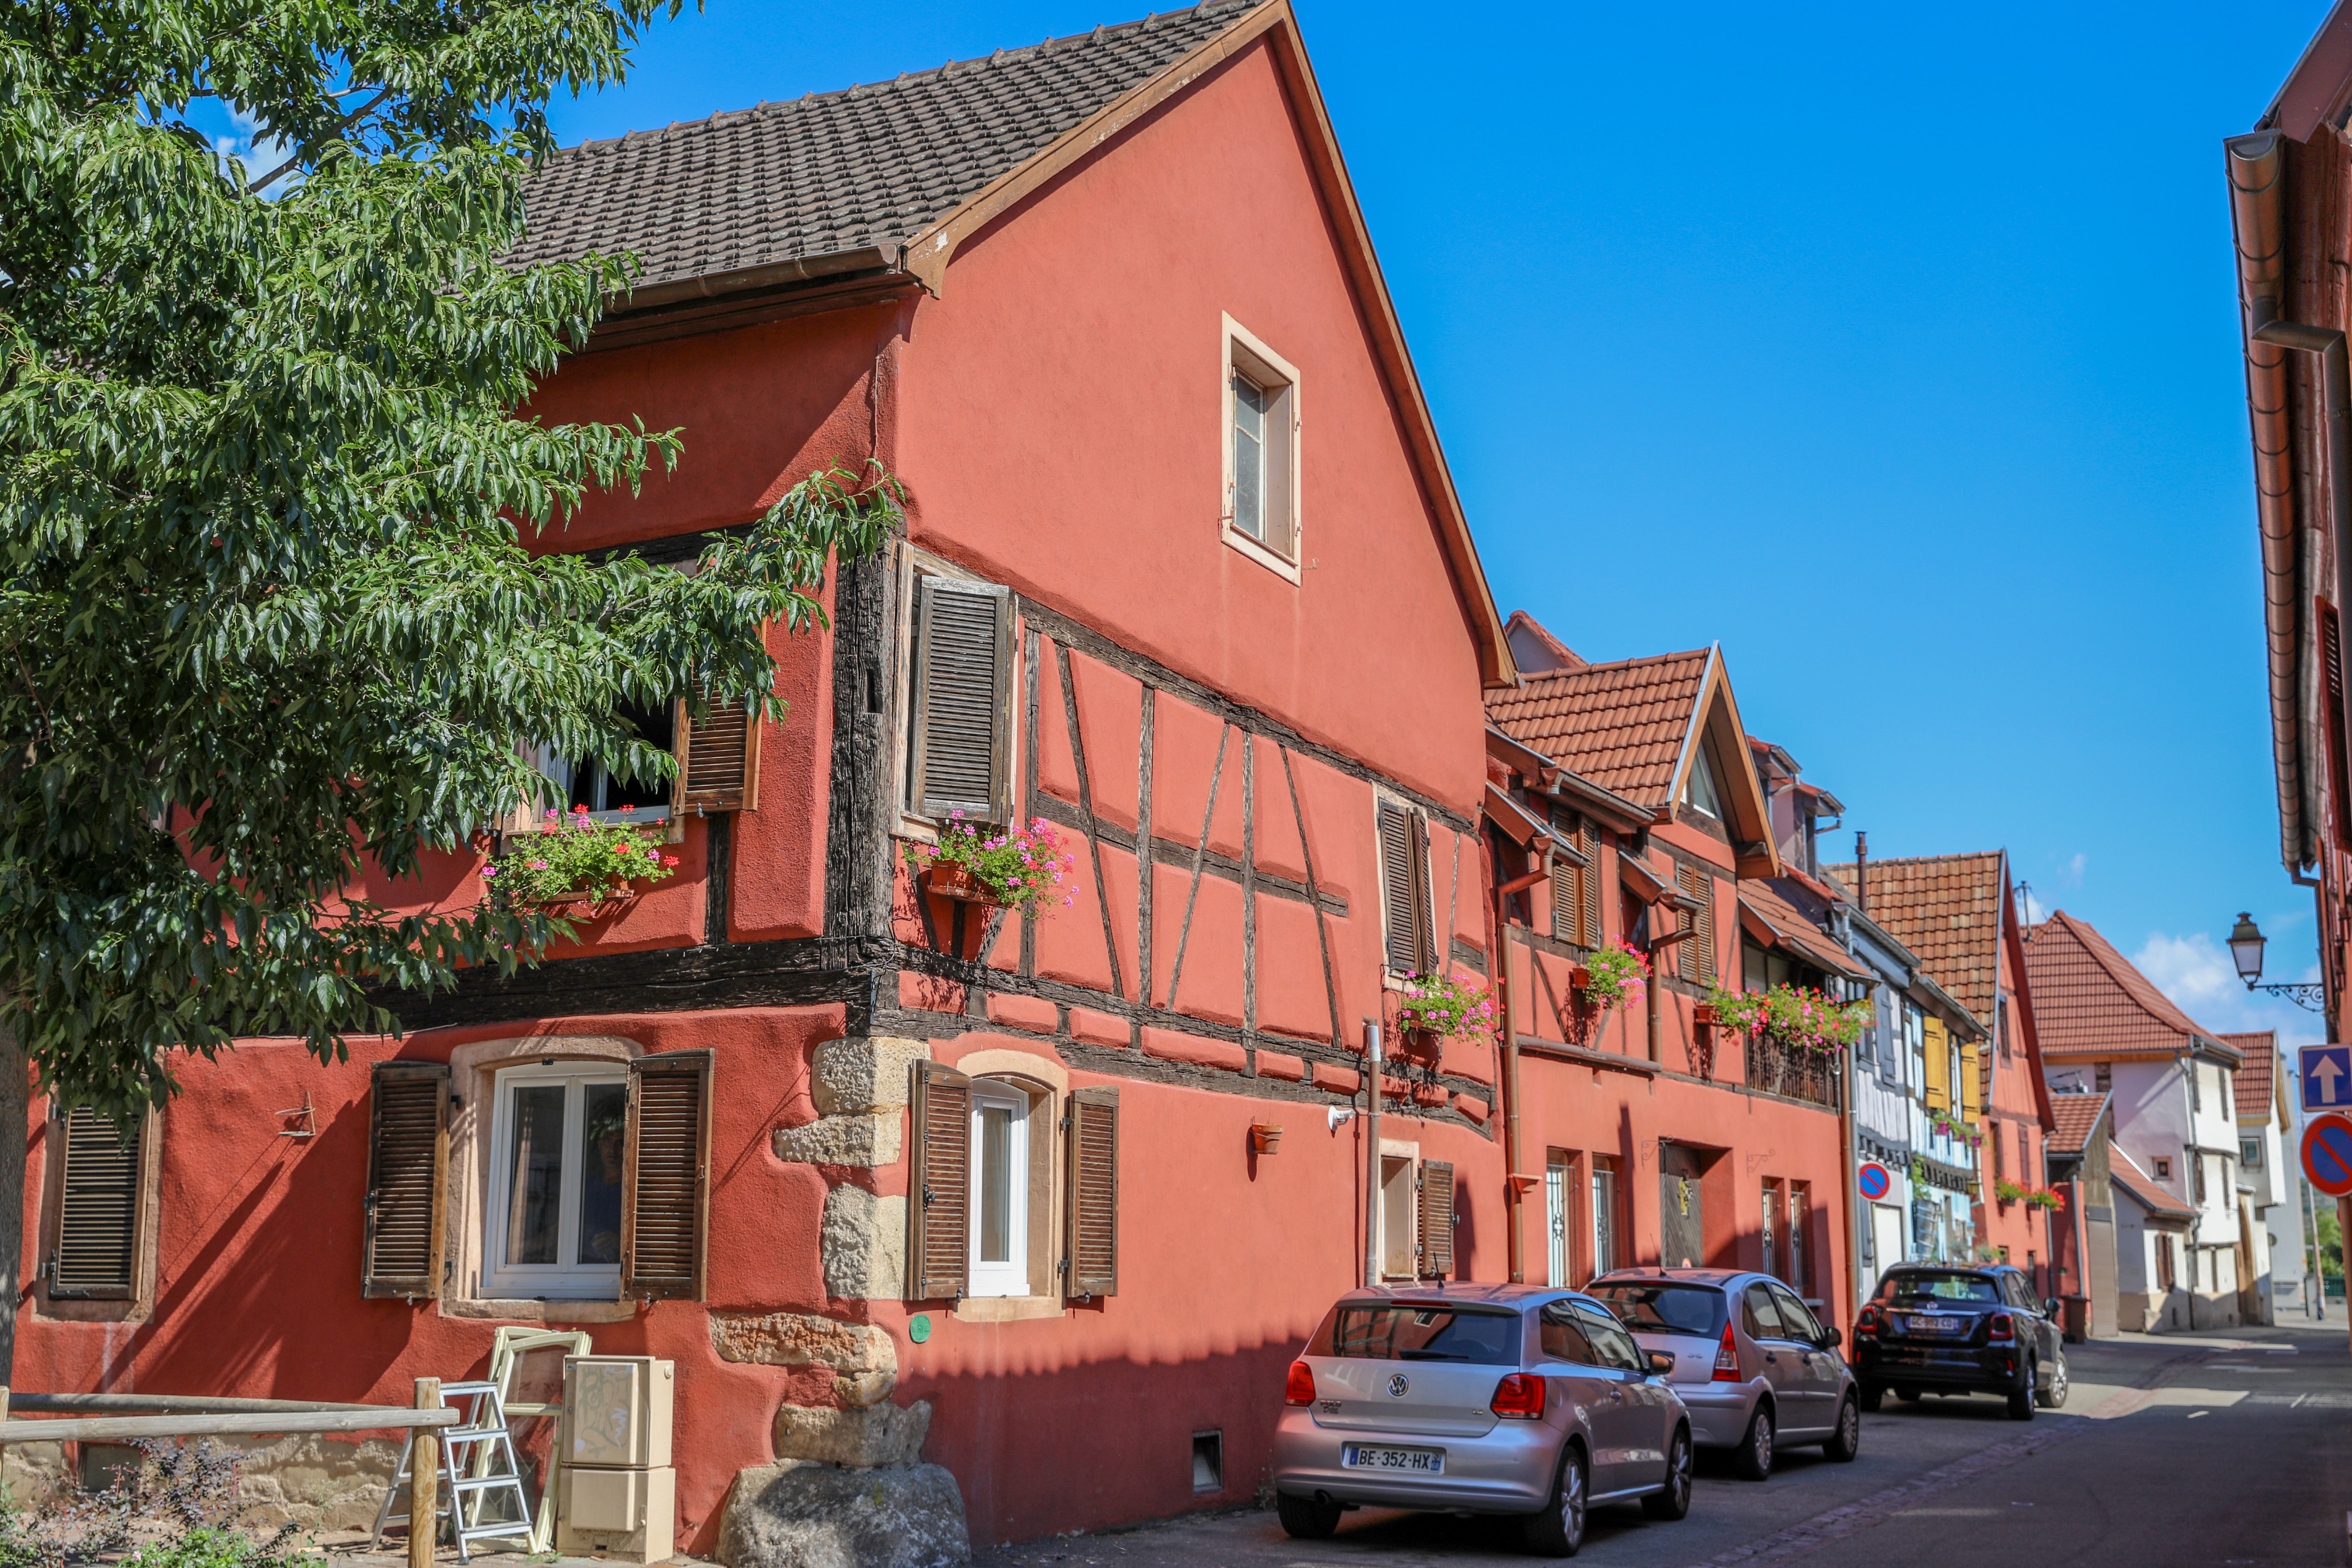  Wintzenheim 